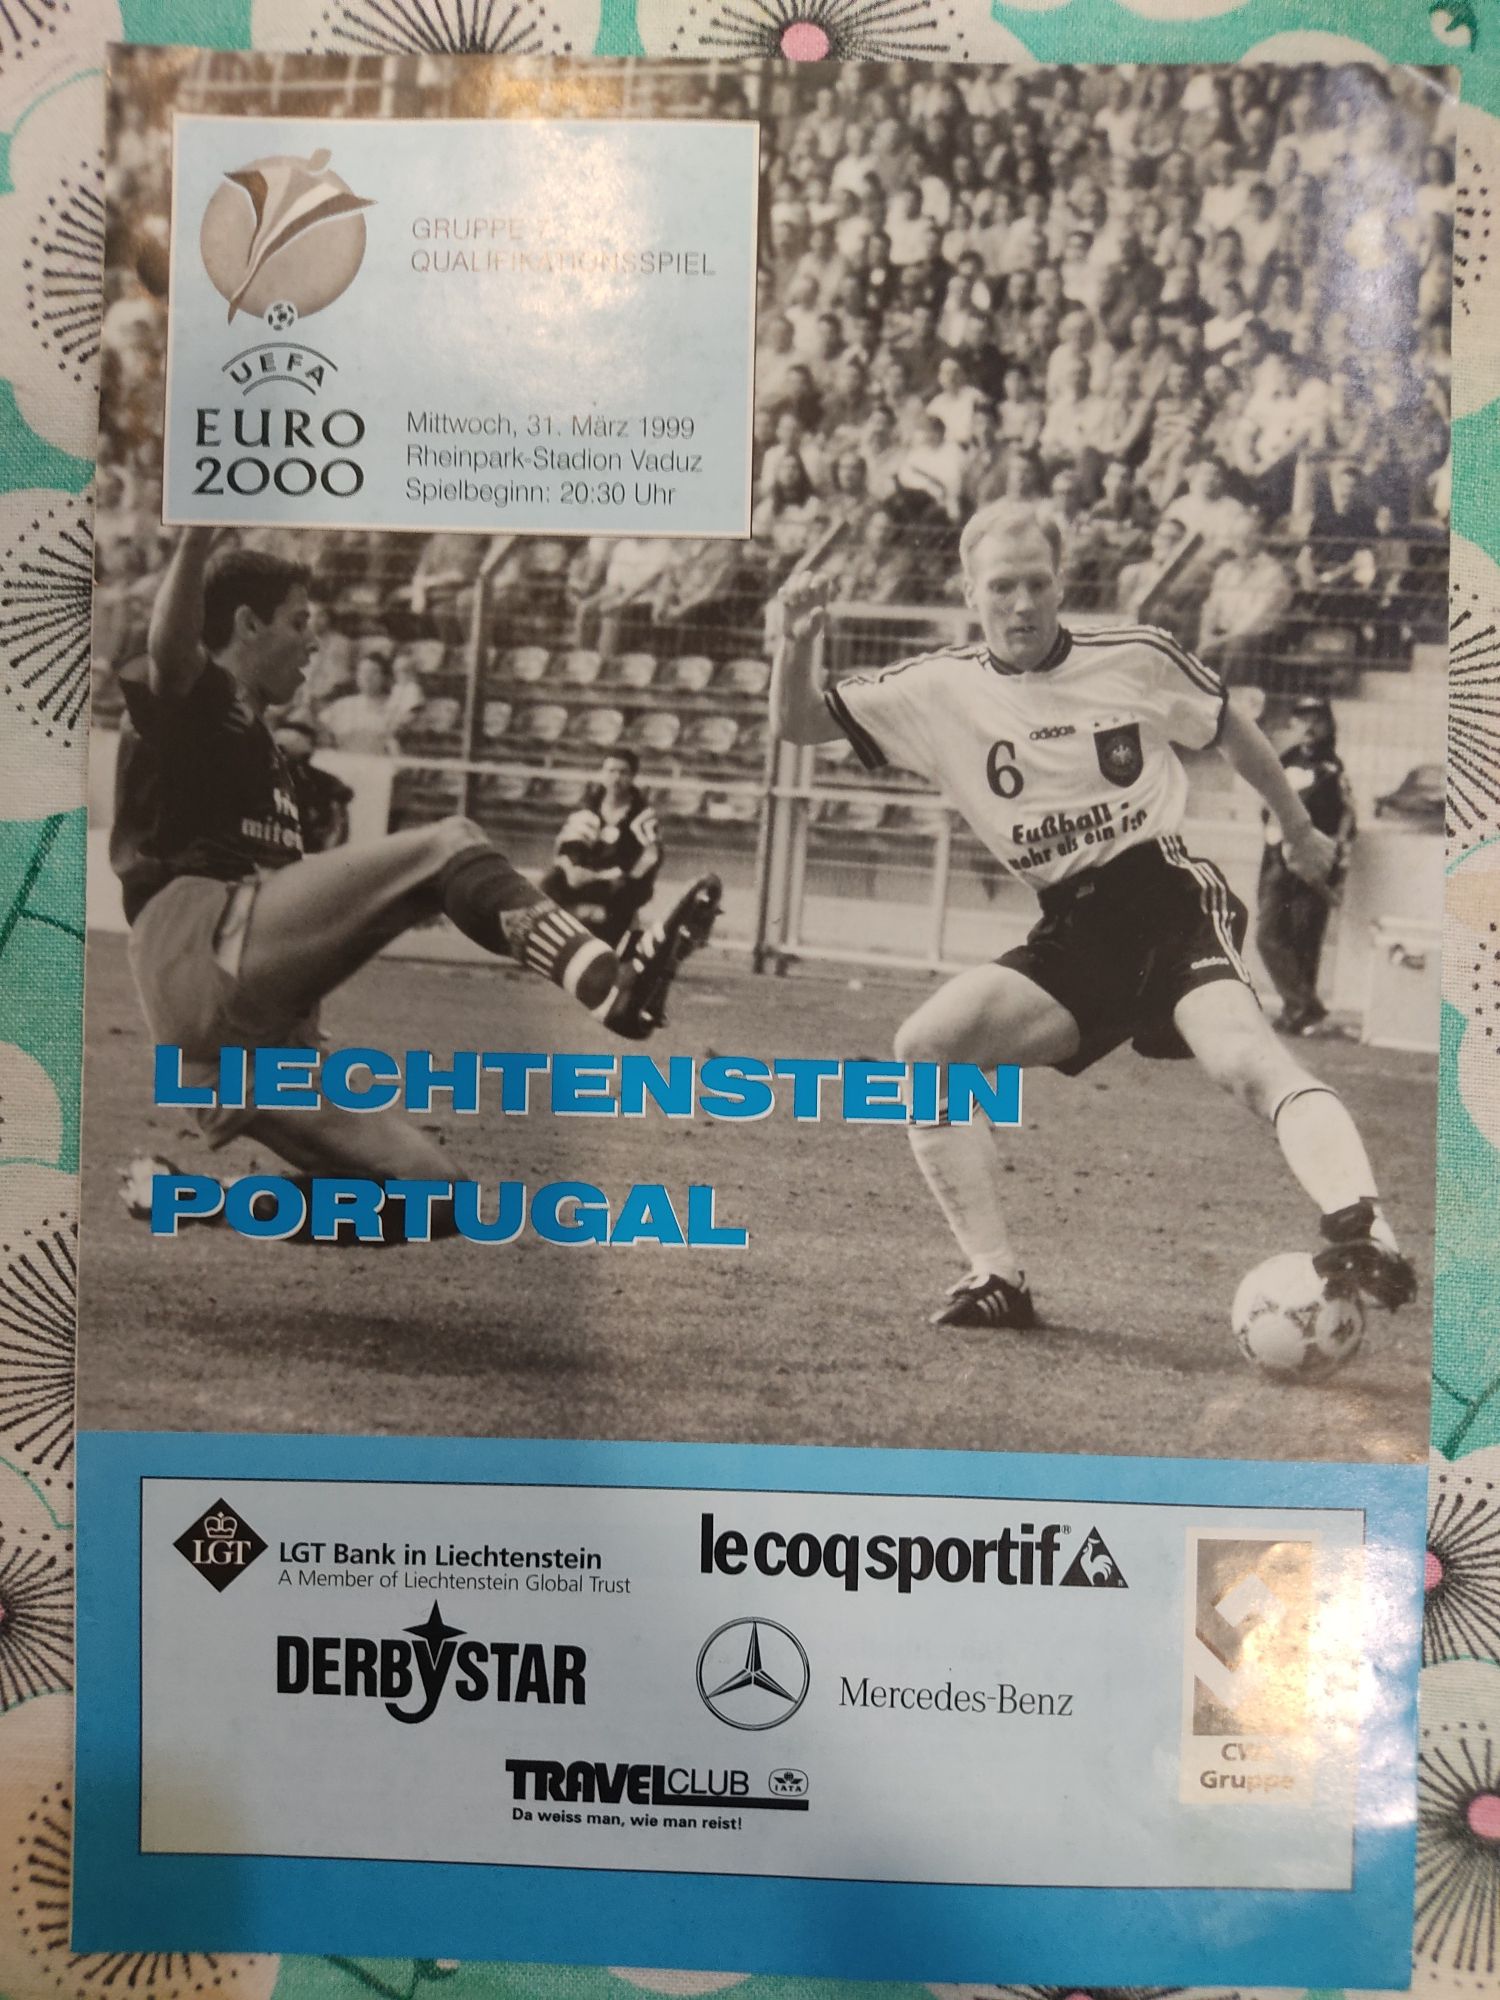 Programa oficial Liechtenstein Portugal 1999